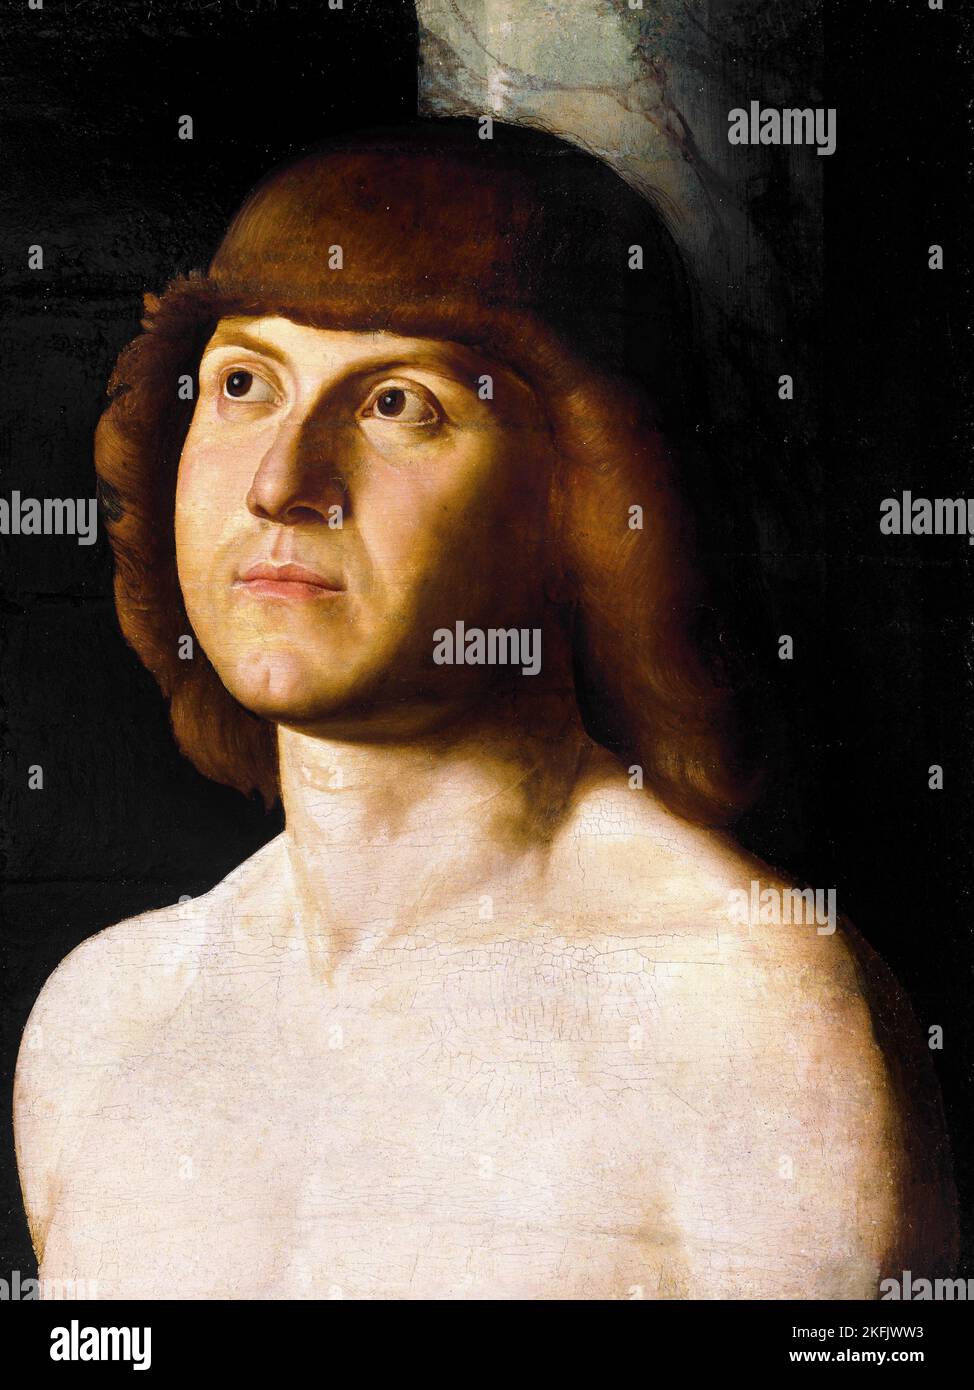 Anhänger von Antonello da Messina; Heiliger Sebastian; Ende des 15.. Jahrhunderts; Öl auf Tafel; Brooklyn Museum, New York, USA. Stockfoto